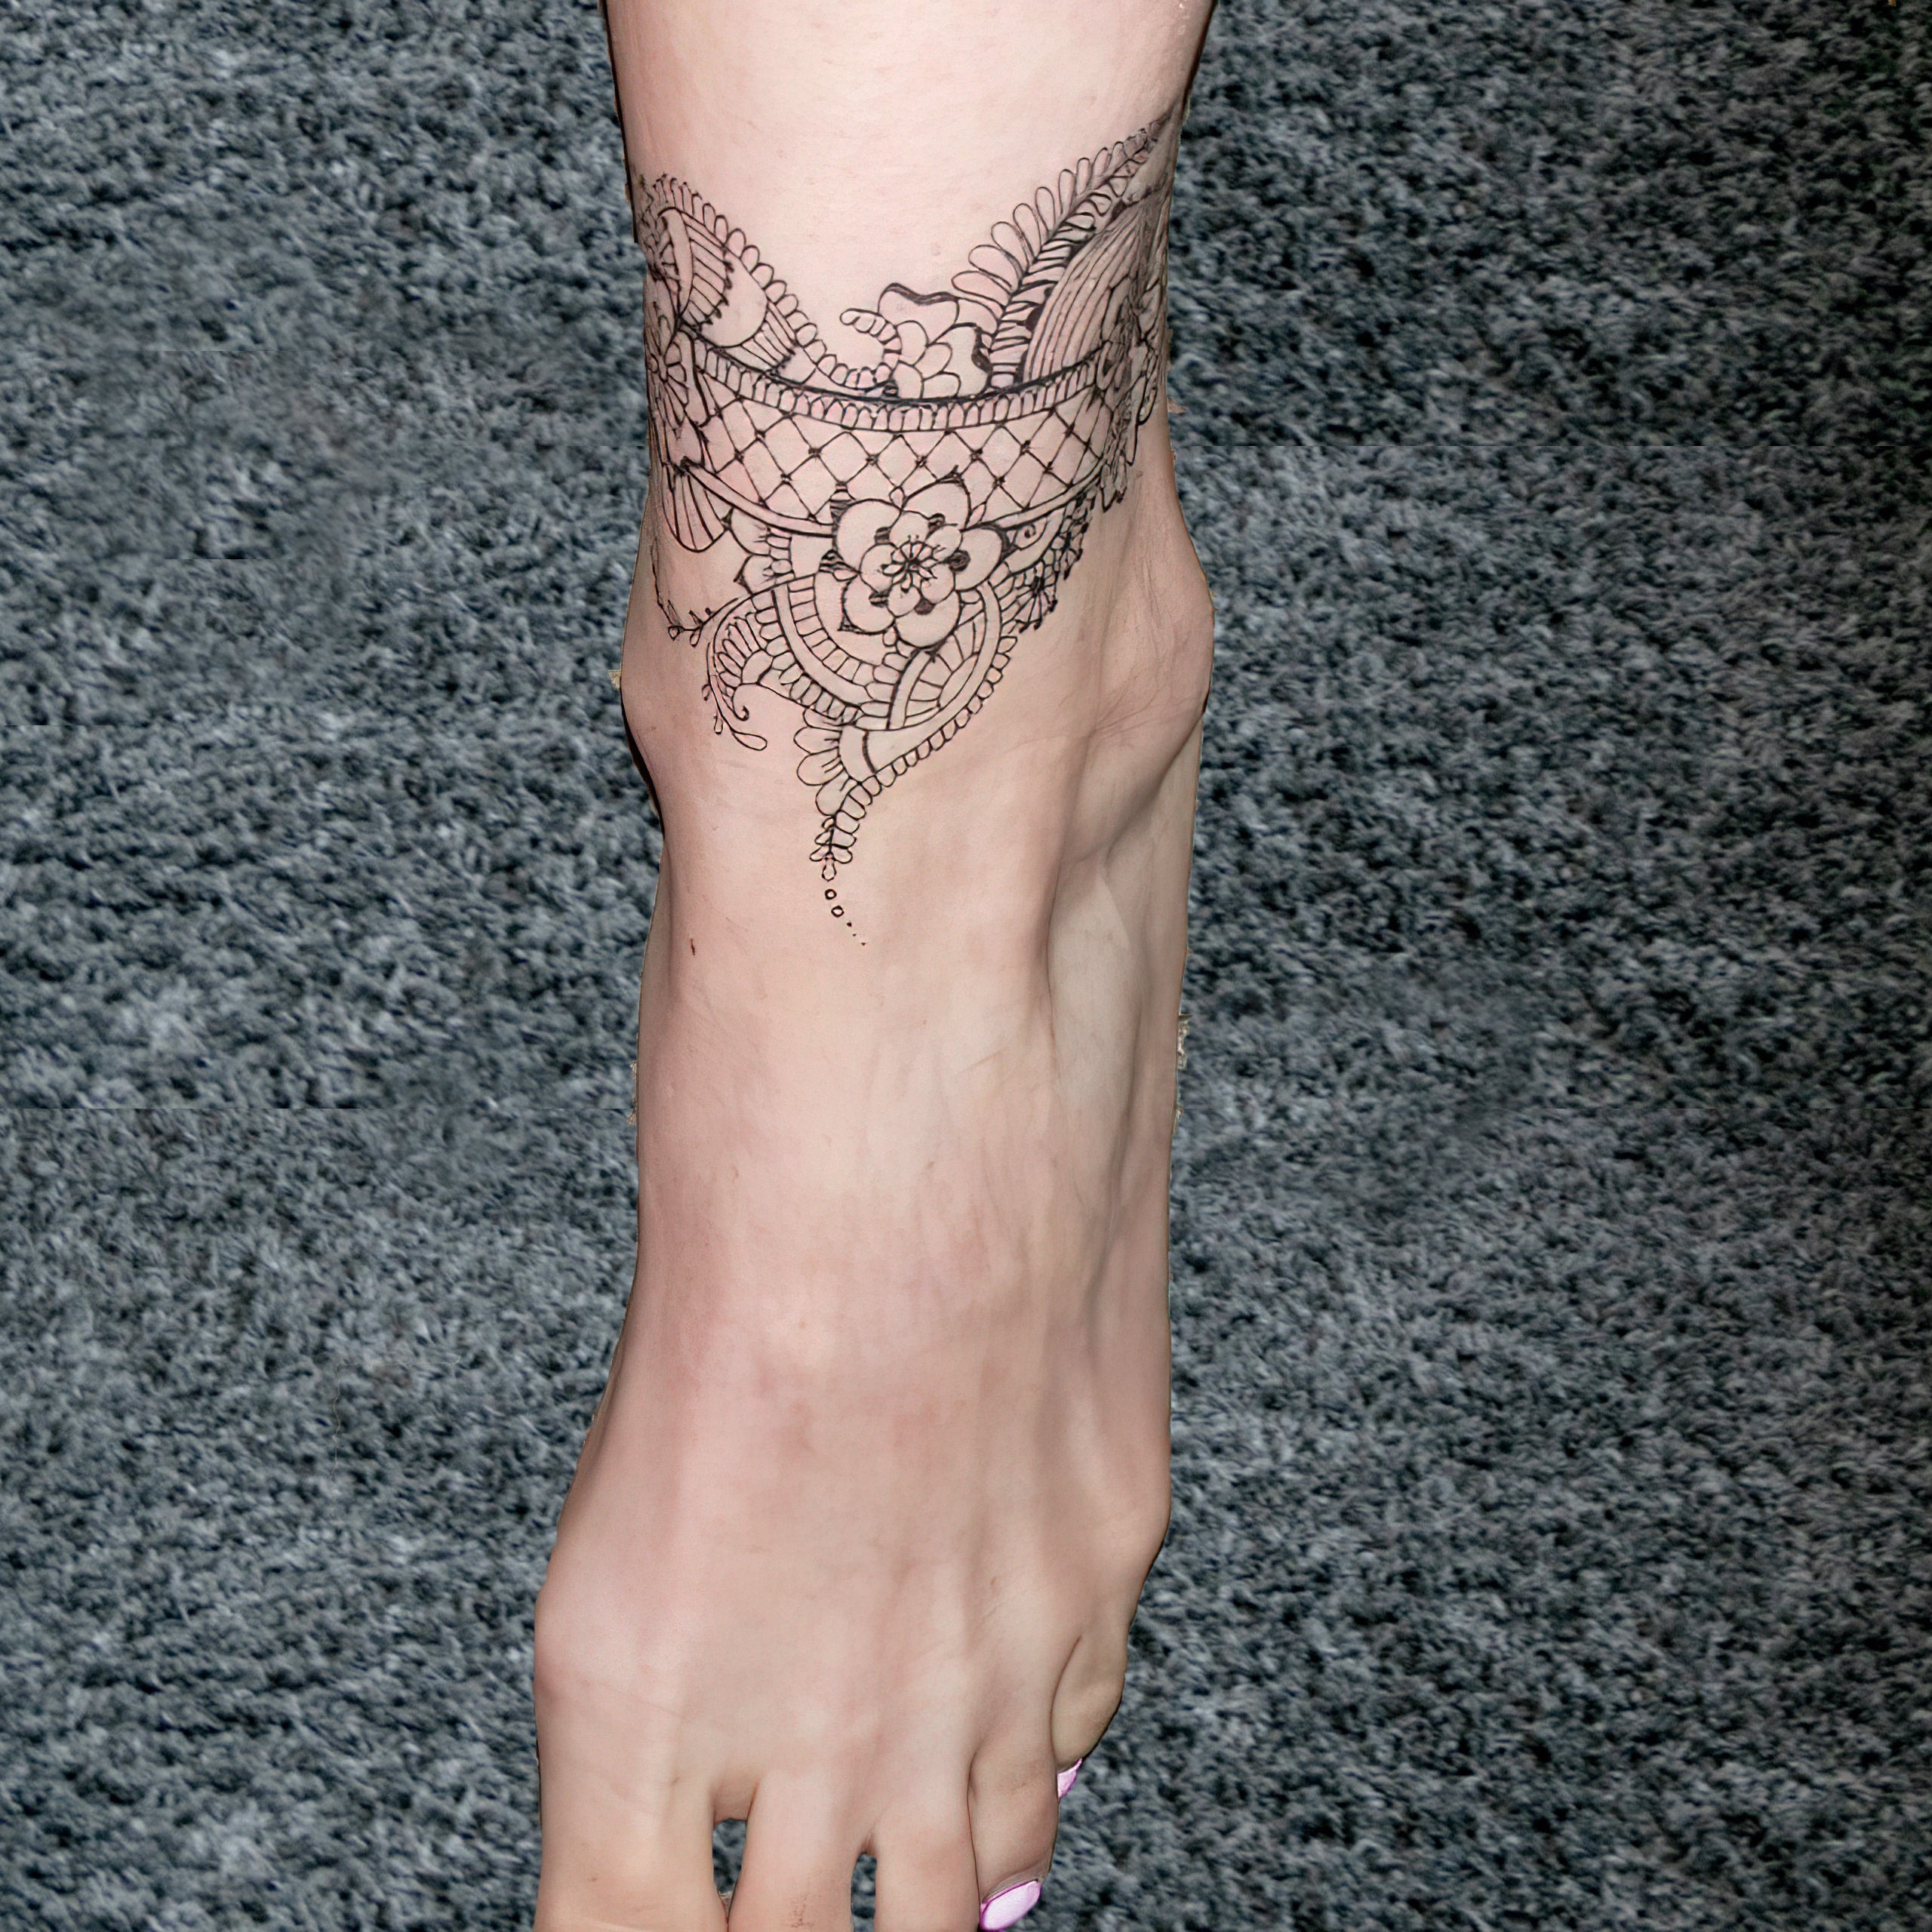 Tattoo uploaded by SION • A purple knotted bracelet around the ankle. # tattoo #Korea #tattooart #koreatattoo #koreatattooist #flowertattoo  #illustration #birthflowertattoo #tattooistartmag #hongdae #flowers  #coloredtattoo #anklebracelet ...